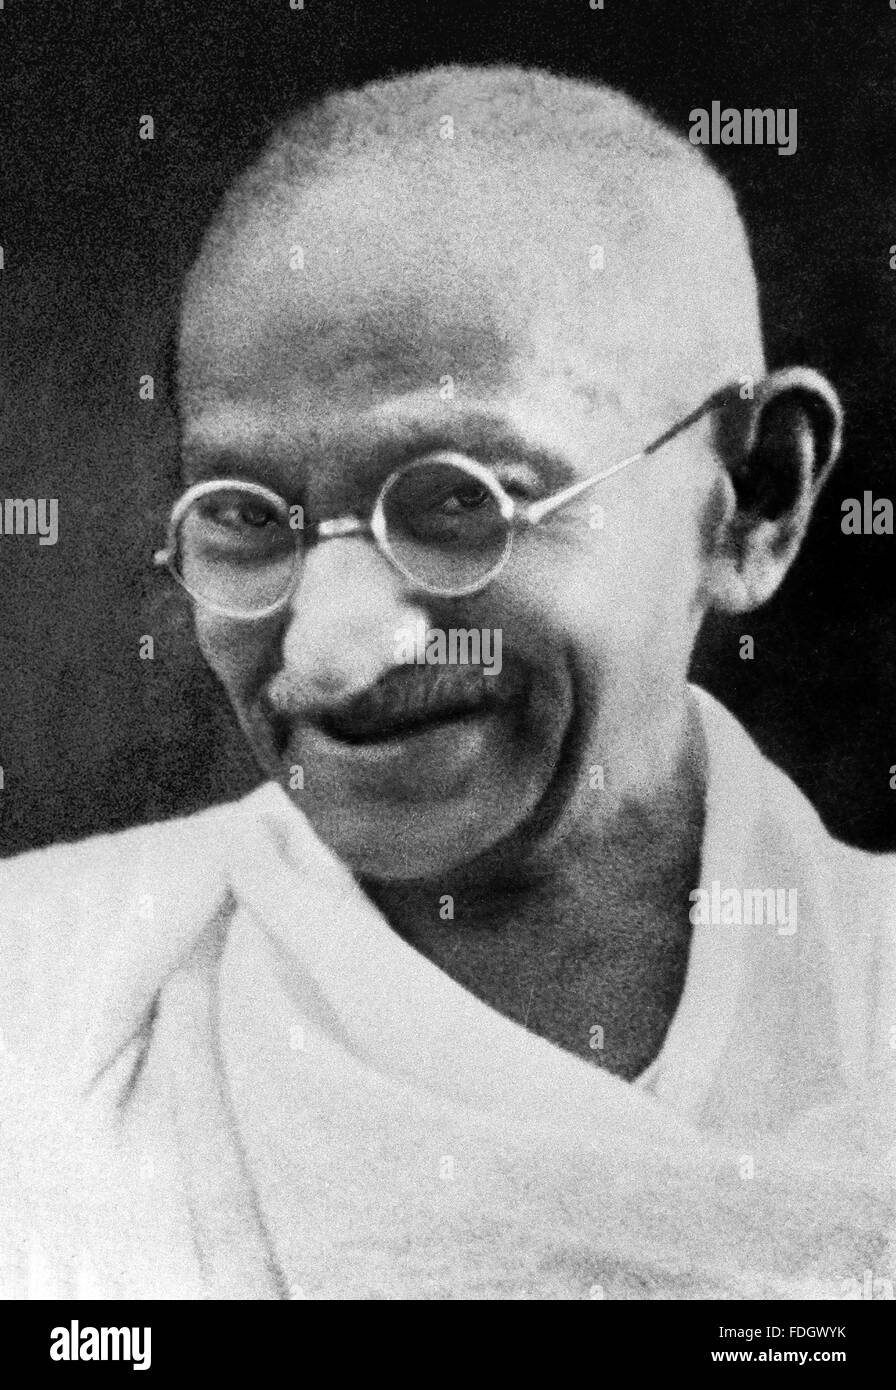 Mahatma Gandhi. Retrato de Mohandas Karamchand Gandhi (1869-1948), ampliamente conocido como Mahatma Gandhi. Fotografía tomada probablemente a finales de los años 30 Foto de stock